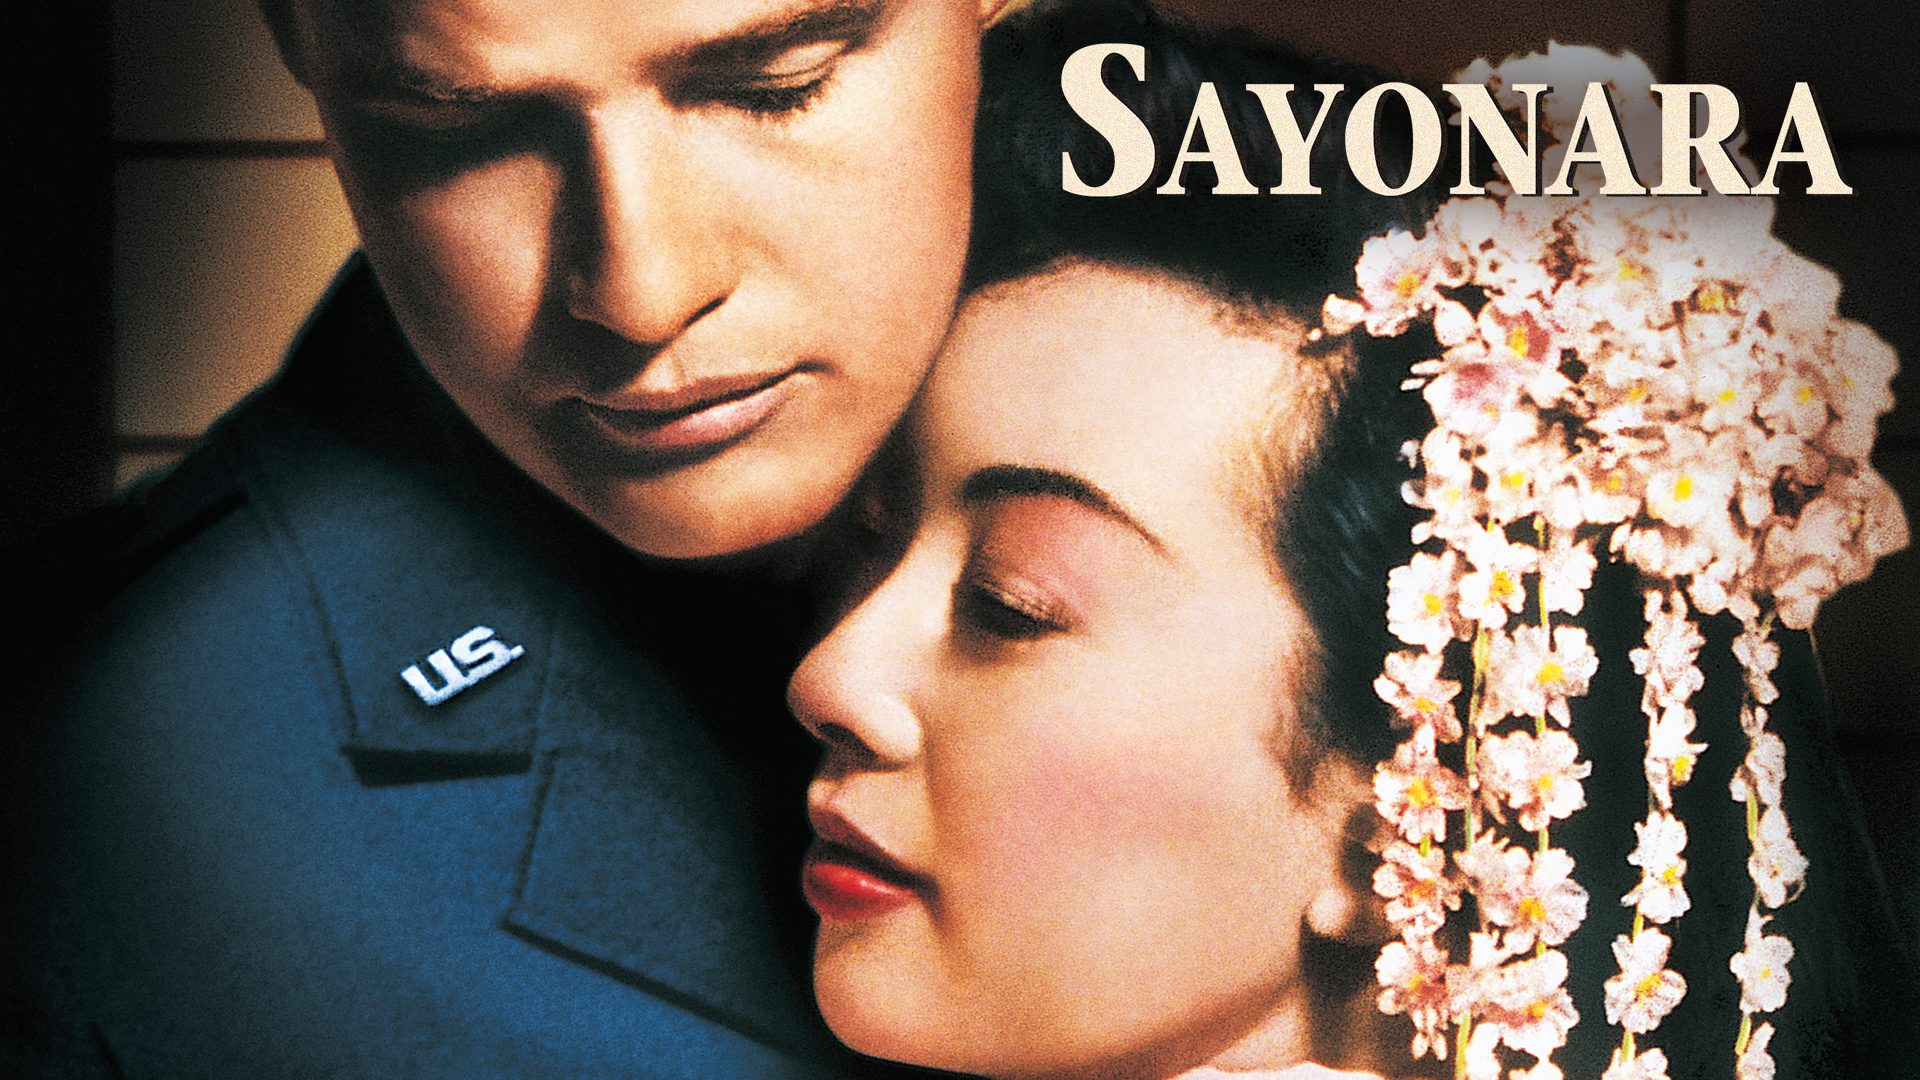 Banner Phim Sayonara (Sayonara)